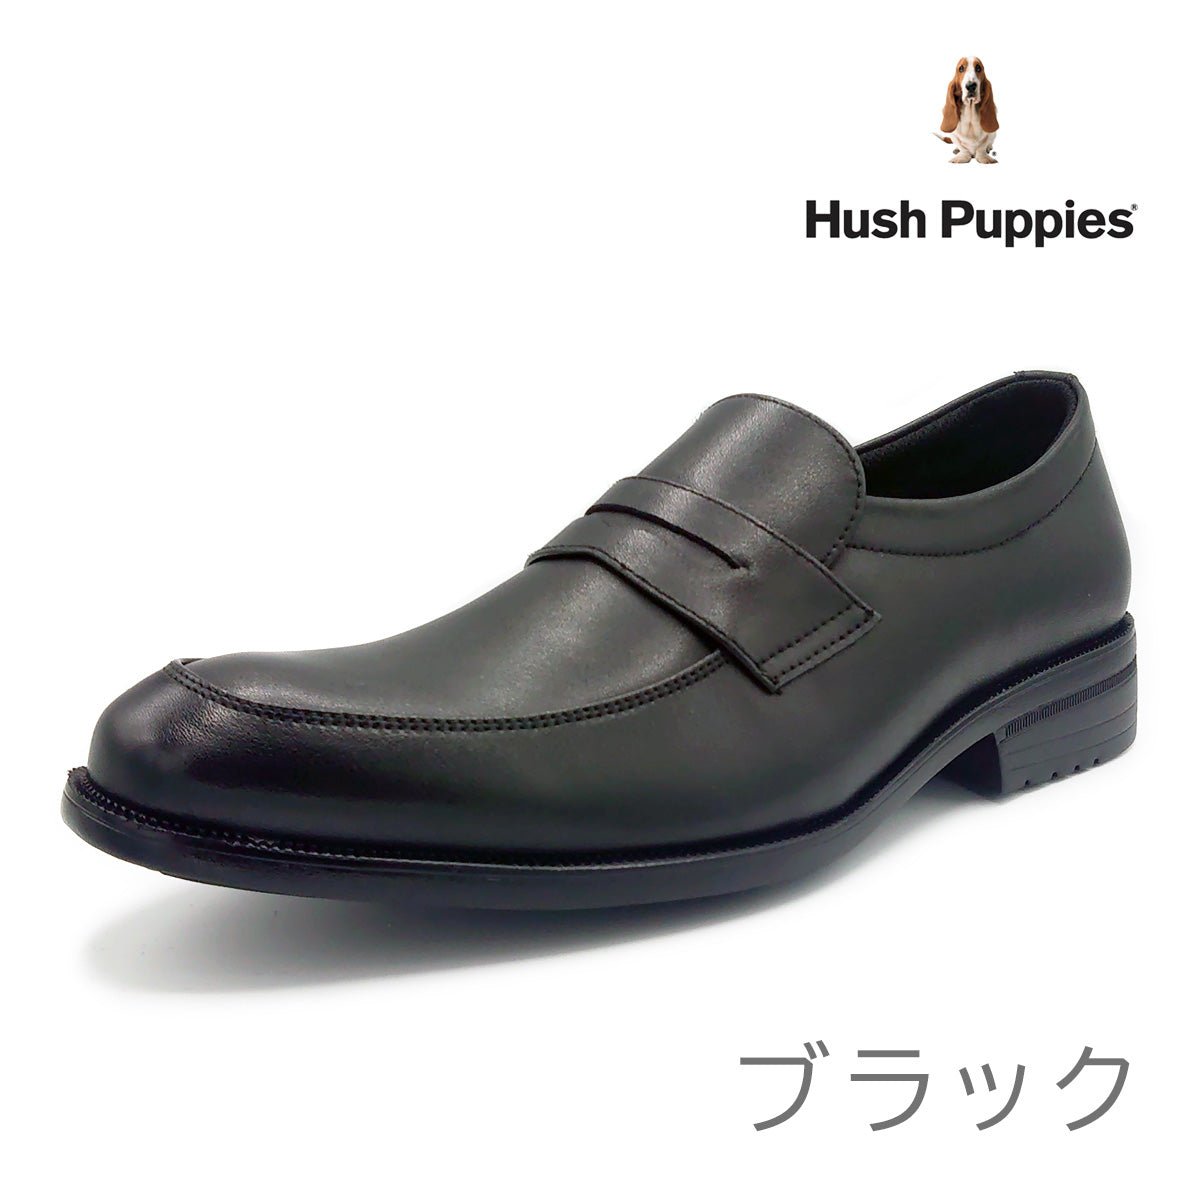 Hush Puppies ハッシュパピー メンズ ローファー ビジネスシューズ M-902T ブラック 靴 - Hush Puppies(ハッシュパピー) - 202シューズモリ オンラインショップ